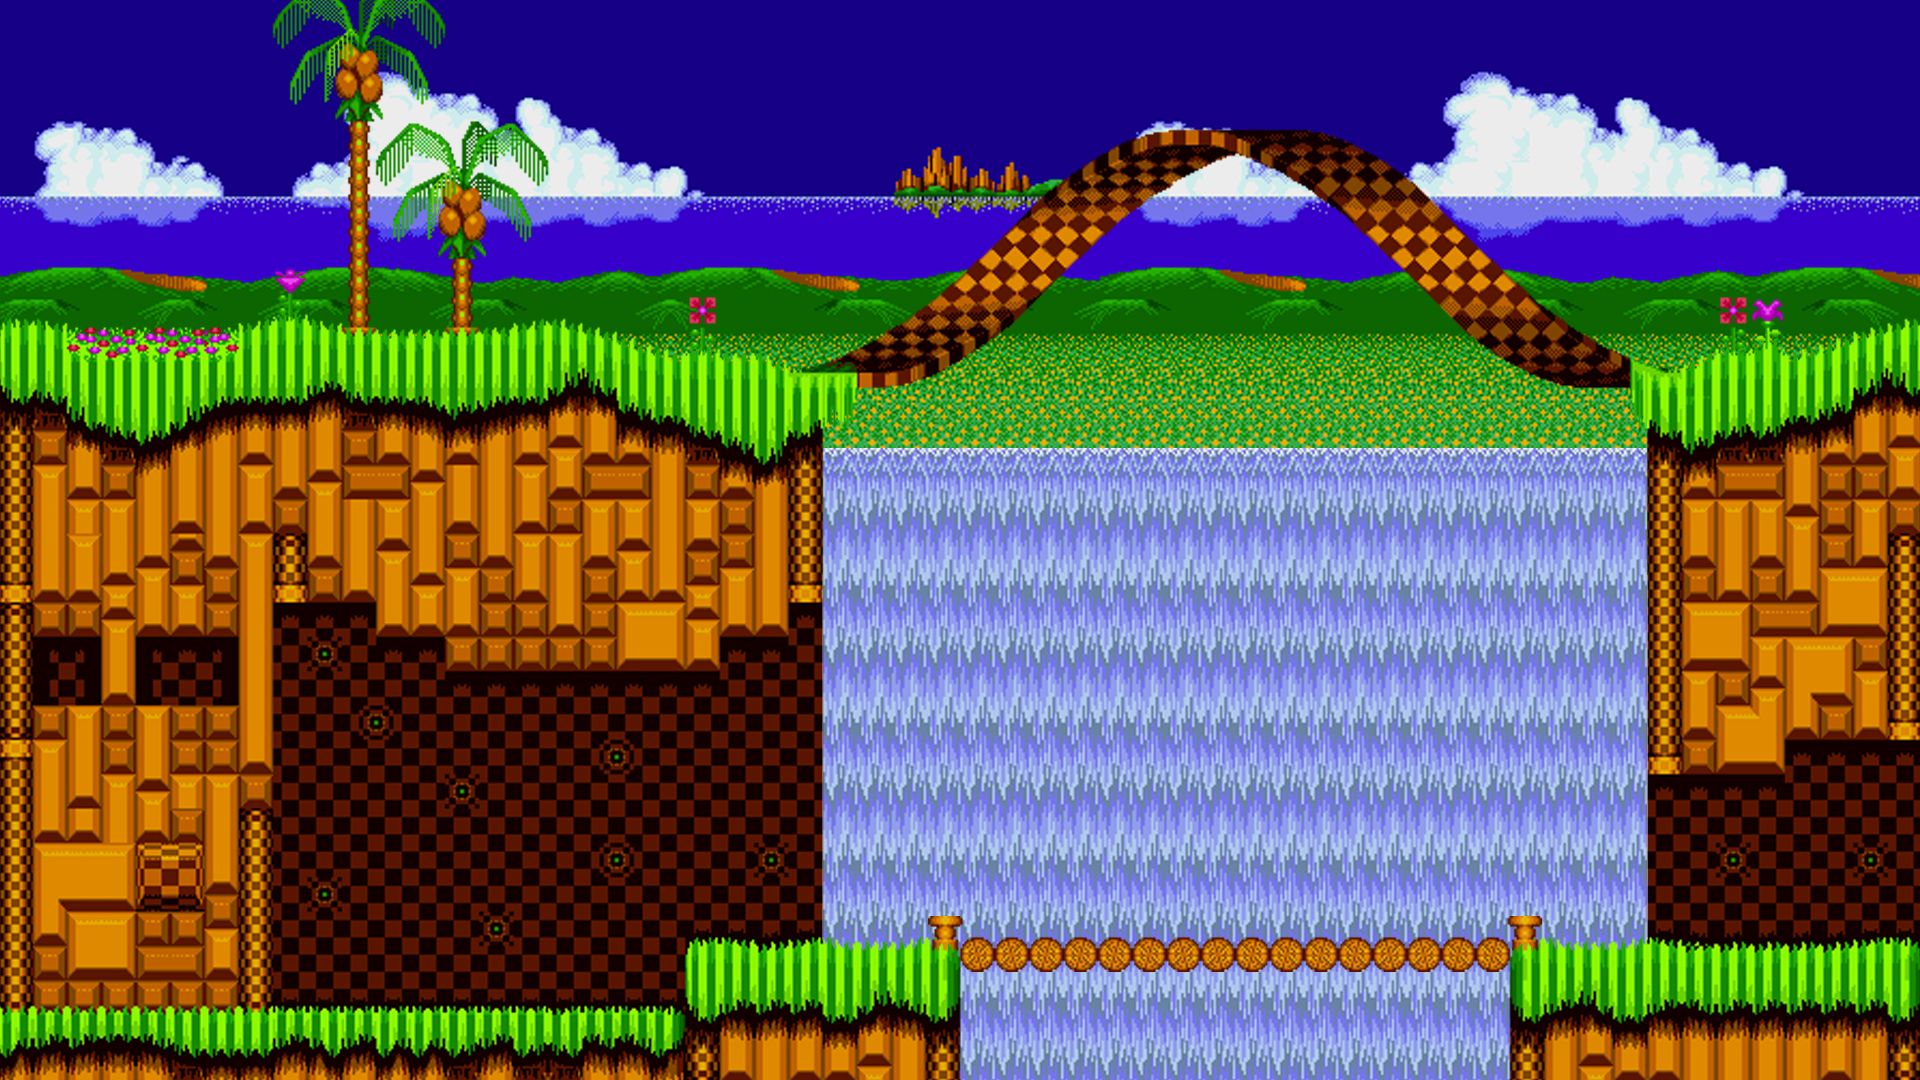 Lấy những hình ảnh đặc sắc từ trò chơi Sonic để tạo nên một màn hình độc đáo với hình nền Trò chơi Sonic từ Wallpaper Cave. Những cảnh chiến đấu và phần thưởng sẽ là nguồn cảm hứng để bạn trang trí màn hình laptop, điện thoại của mình.